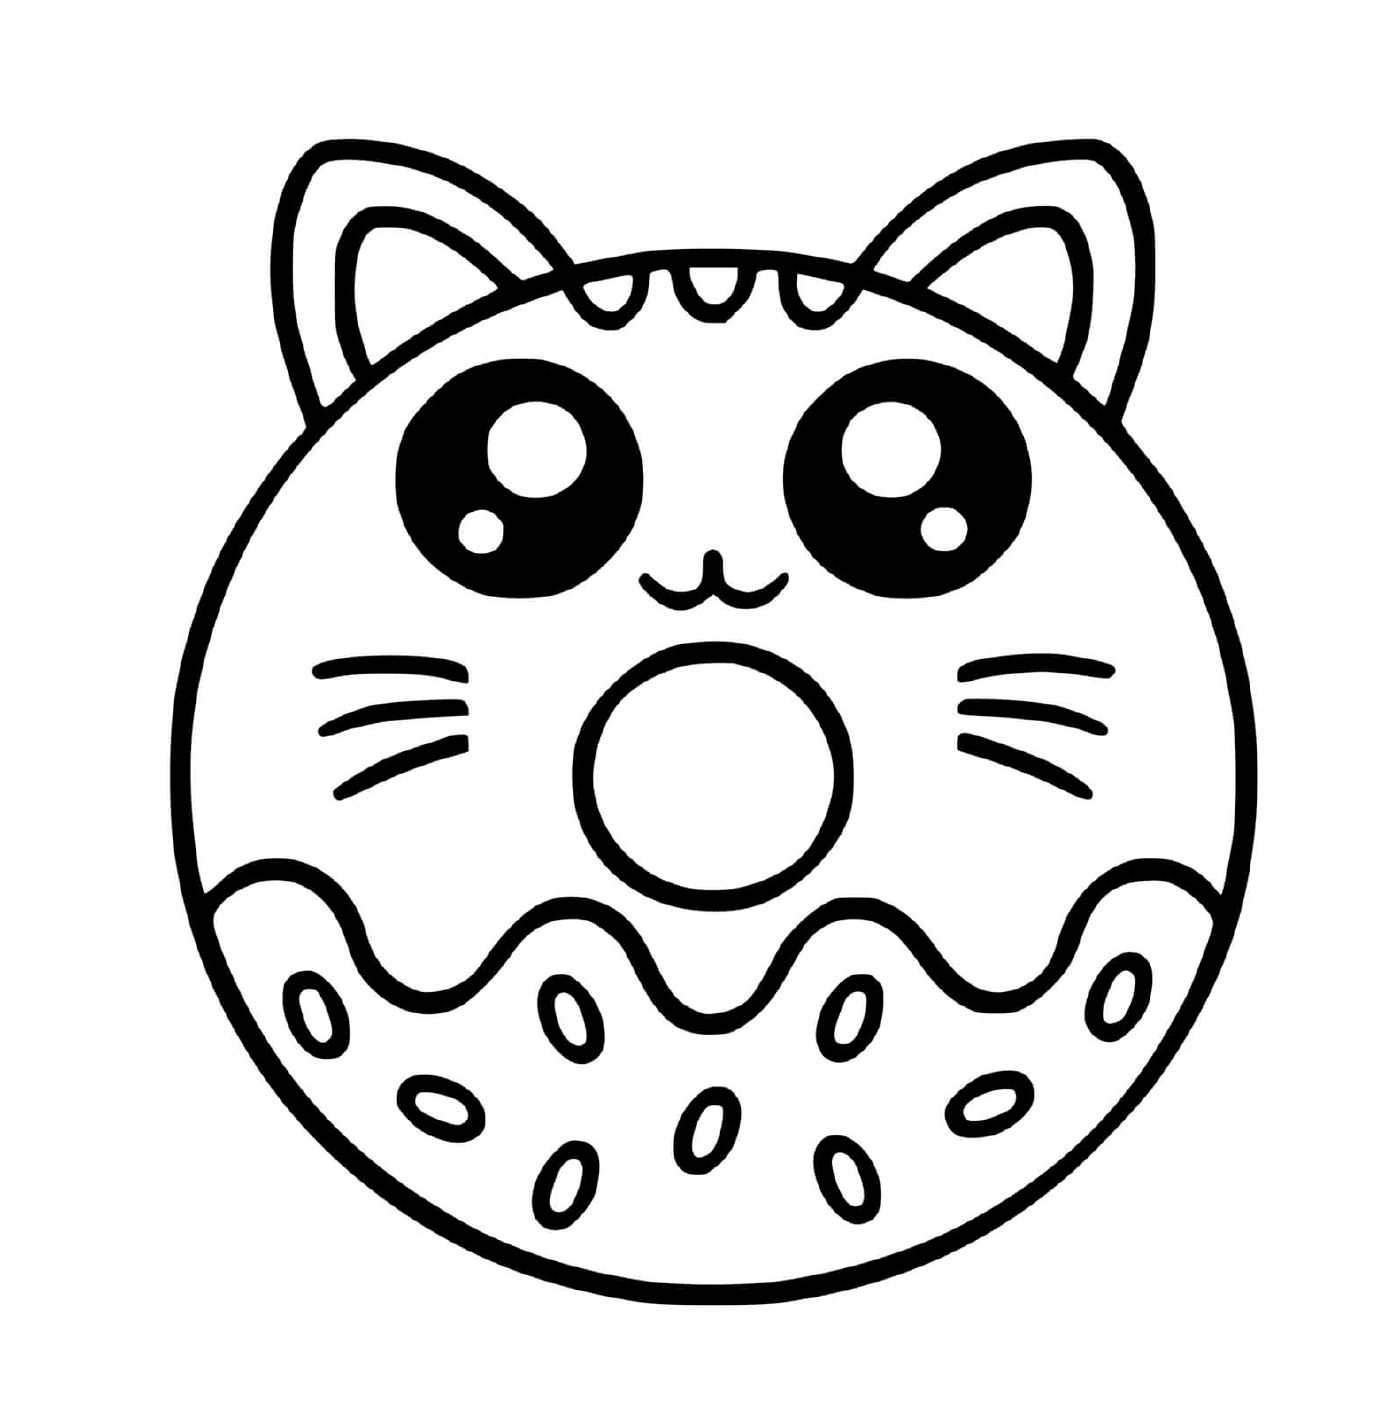  有猫脸的甜甜圈 